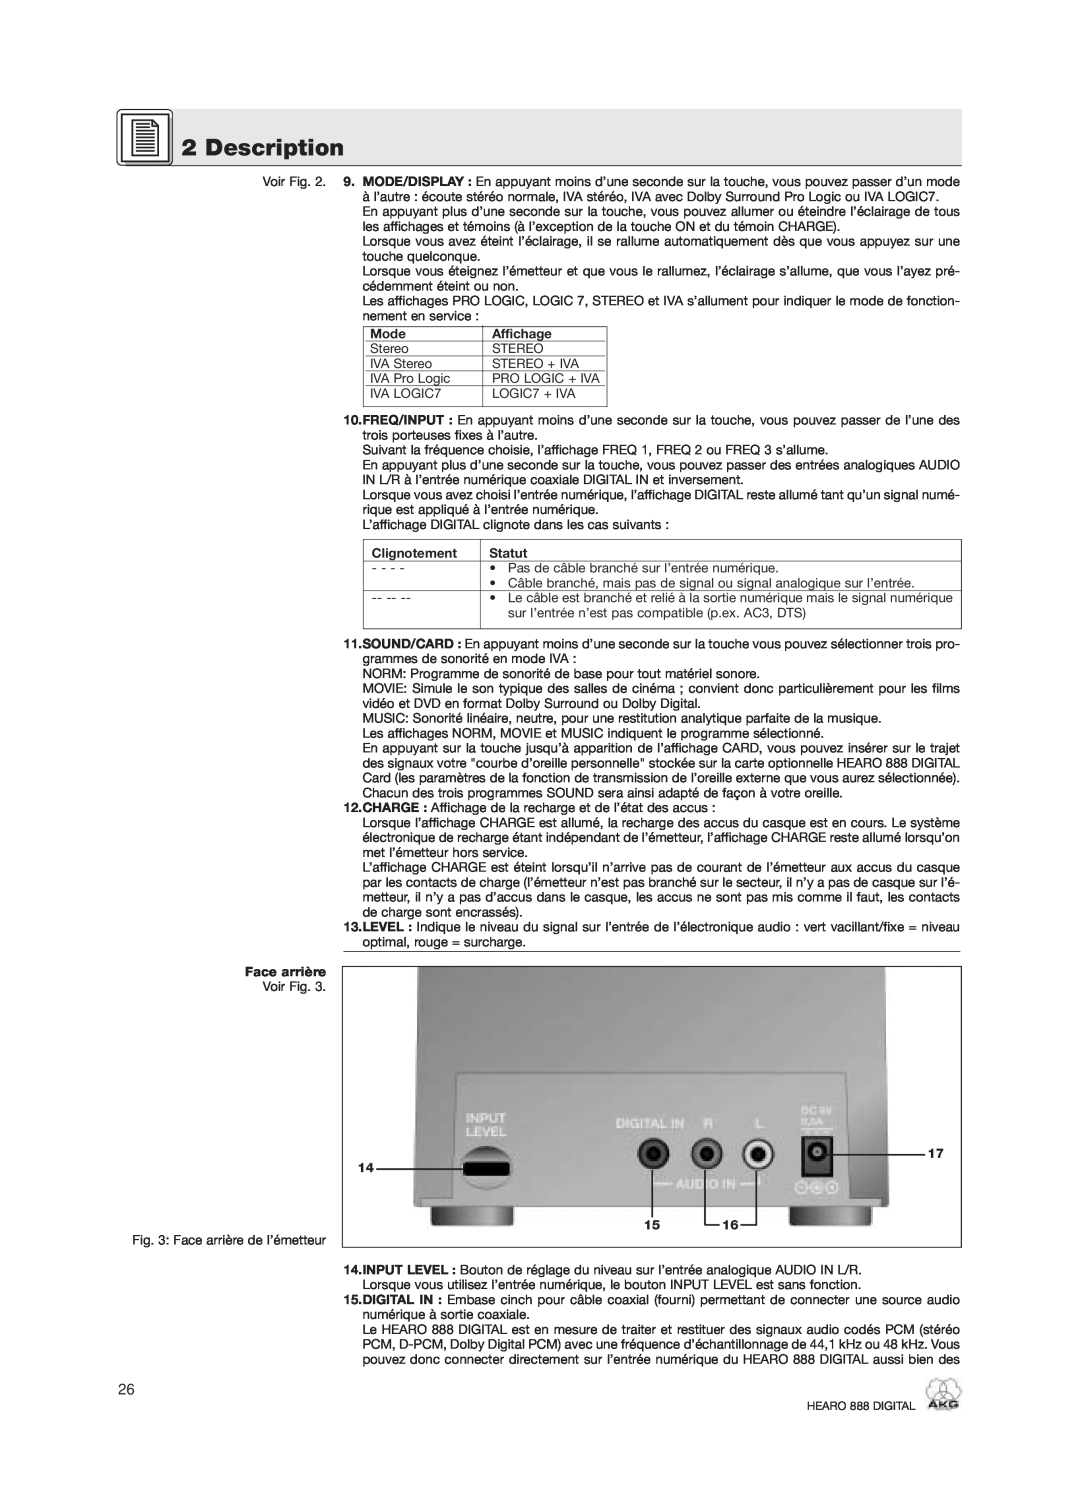 AKG Acoustics HEARO 888 specifications Description, Mode, Affichage, Face arrière, Clignotement, Statut, 17 14 15 